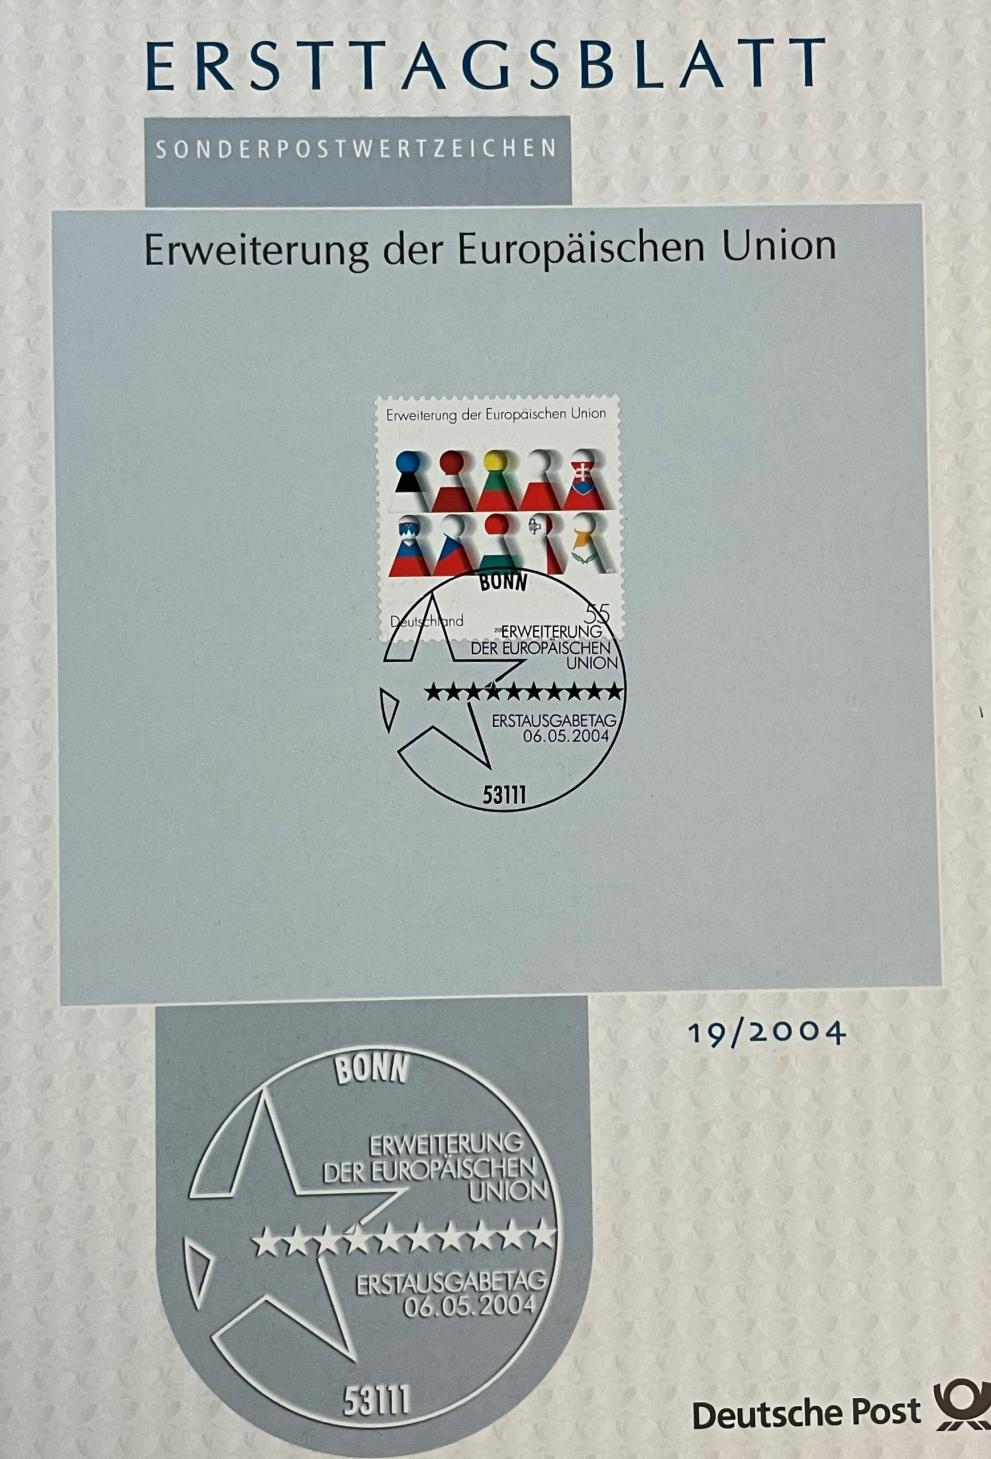 Ersttagsblatt zur EU-Erweiterung.